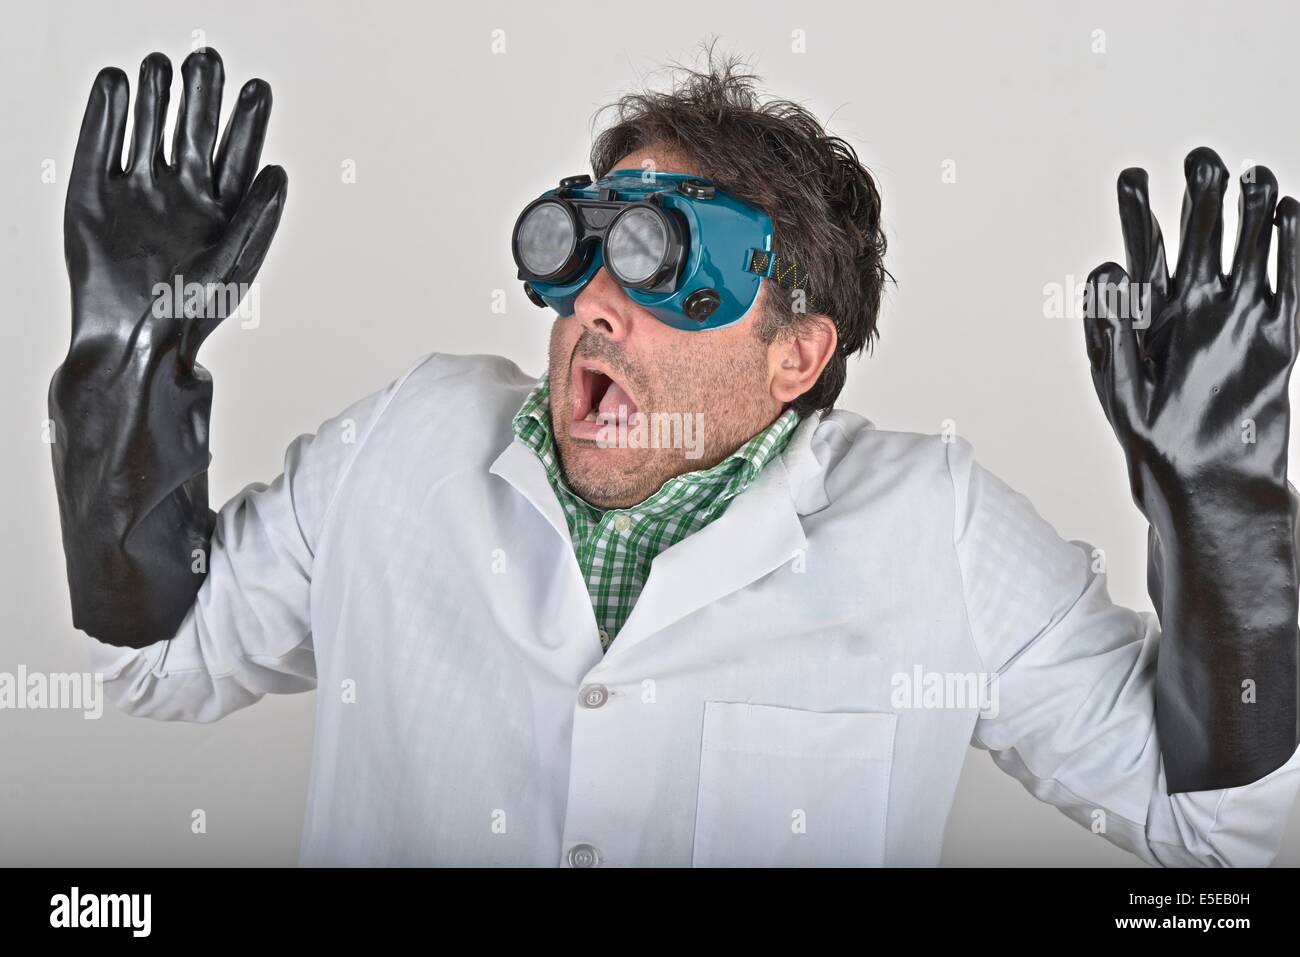 El científico loco vistiendo una protección ocular y guantes. Foto de stock